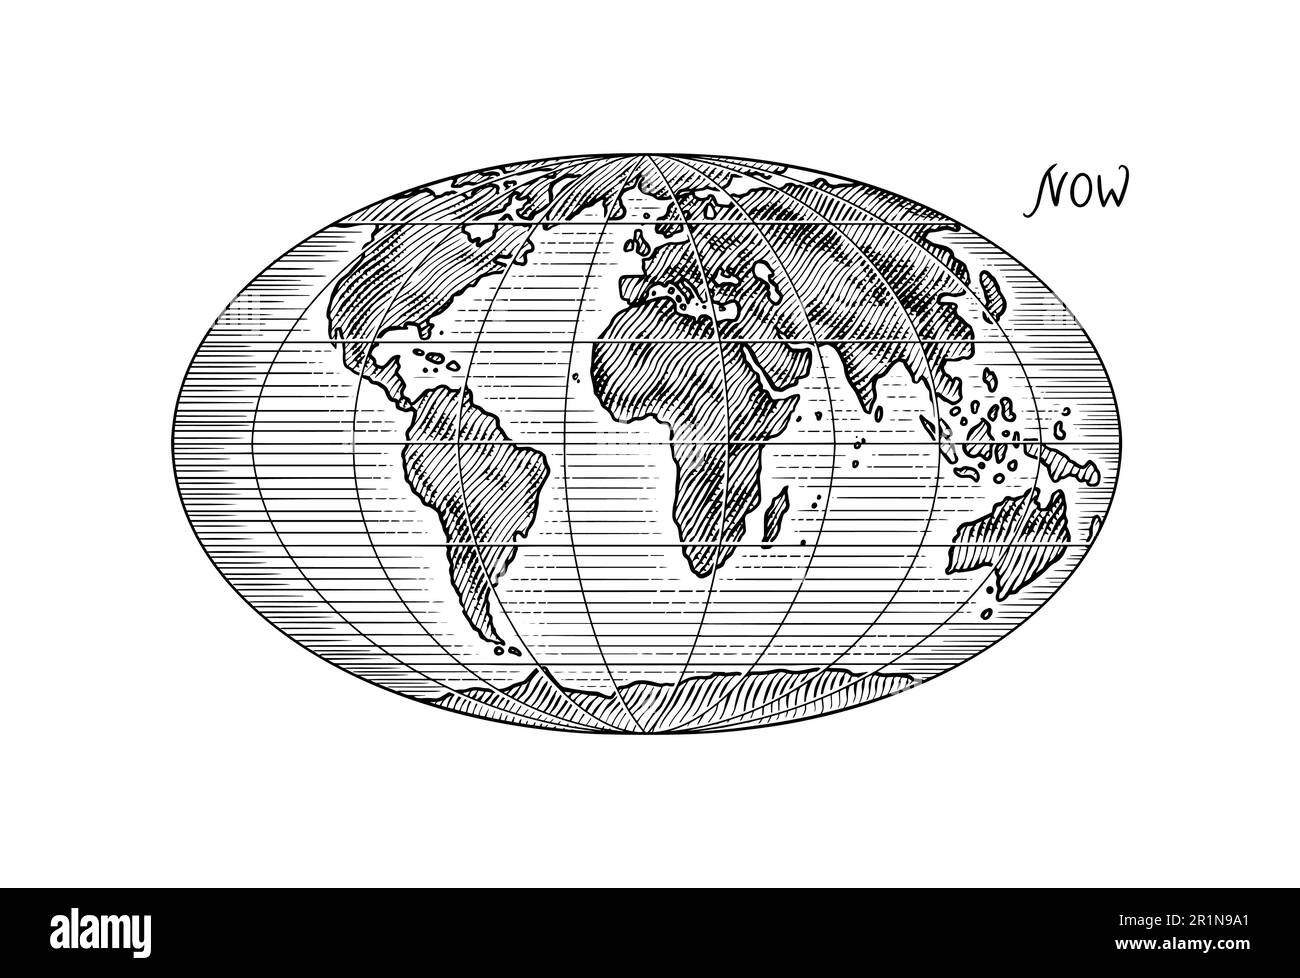 Plattentektonik auf dem Planeten Erde. Pangaea. Kontinentale Drift. Superkontinent. Handgezeichnete Skizze für die Typographie. Vintage-Gravur. Stock Vektor